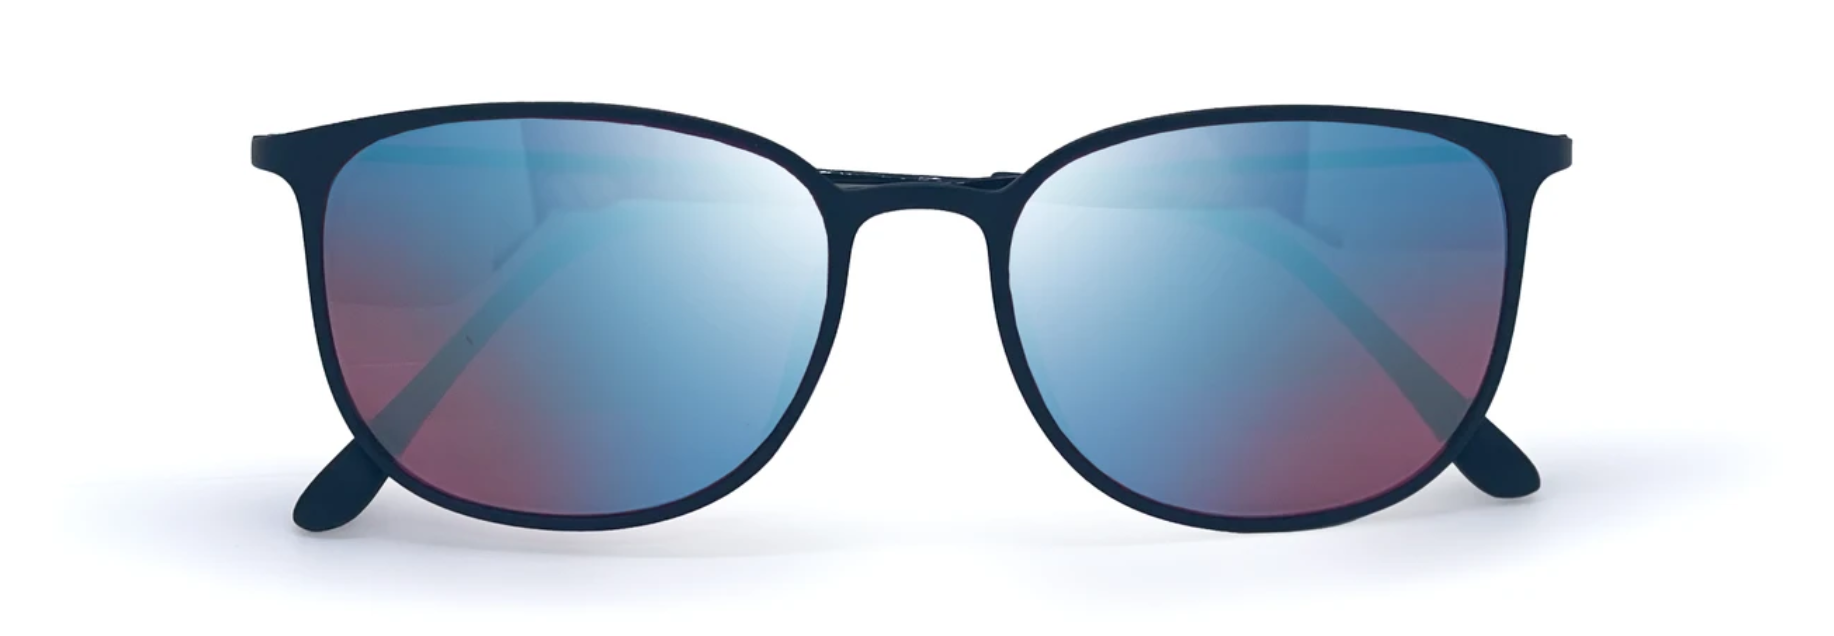 Bestel een kleurenblindbril online ᐅ retour COLORDROP